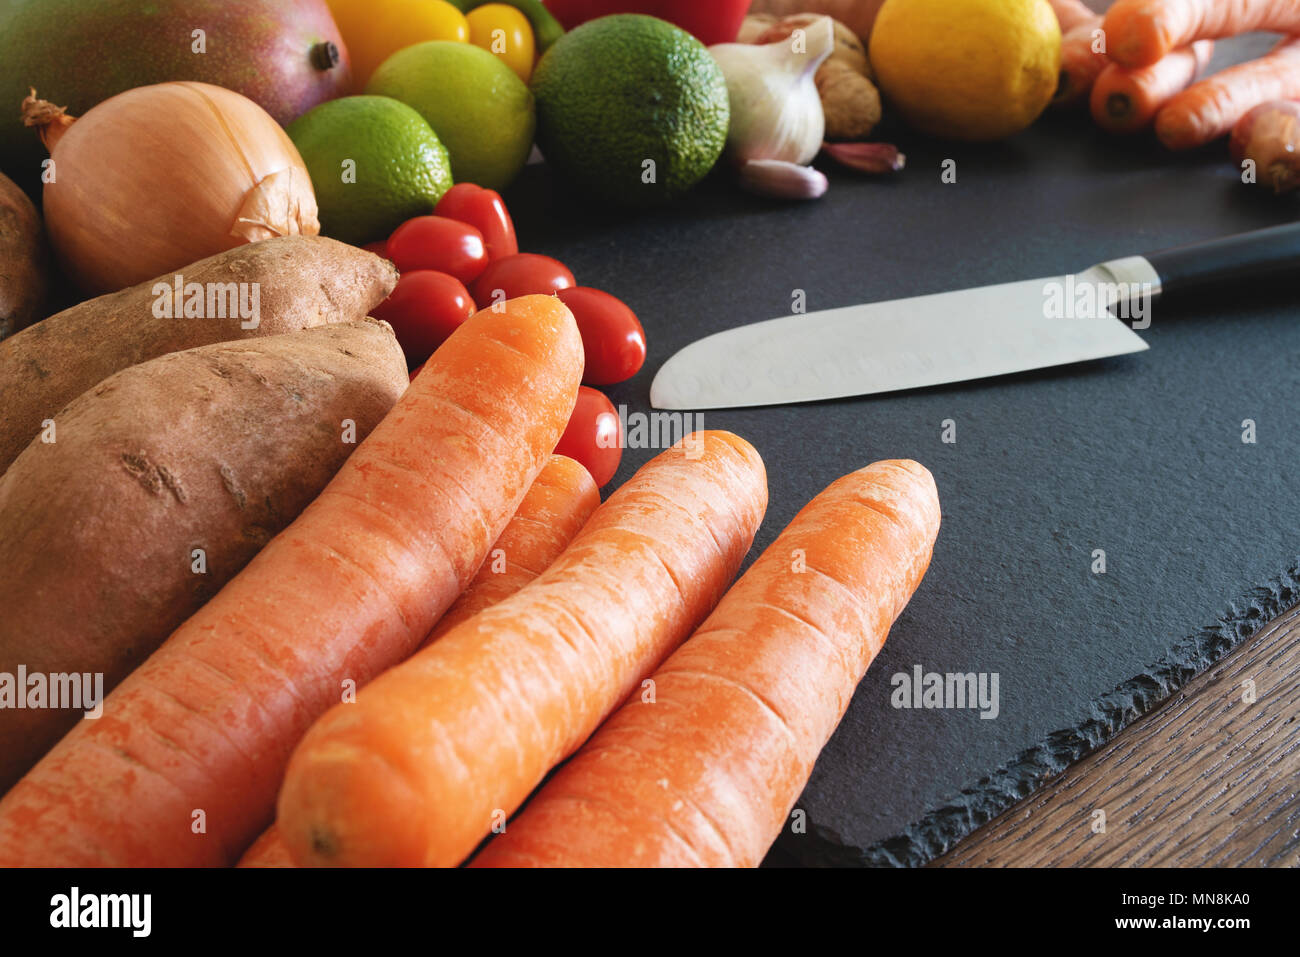 Organico fresco frutta e verdura sull'ardesia tagliere con coltello da cucina Foto Stock